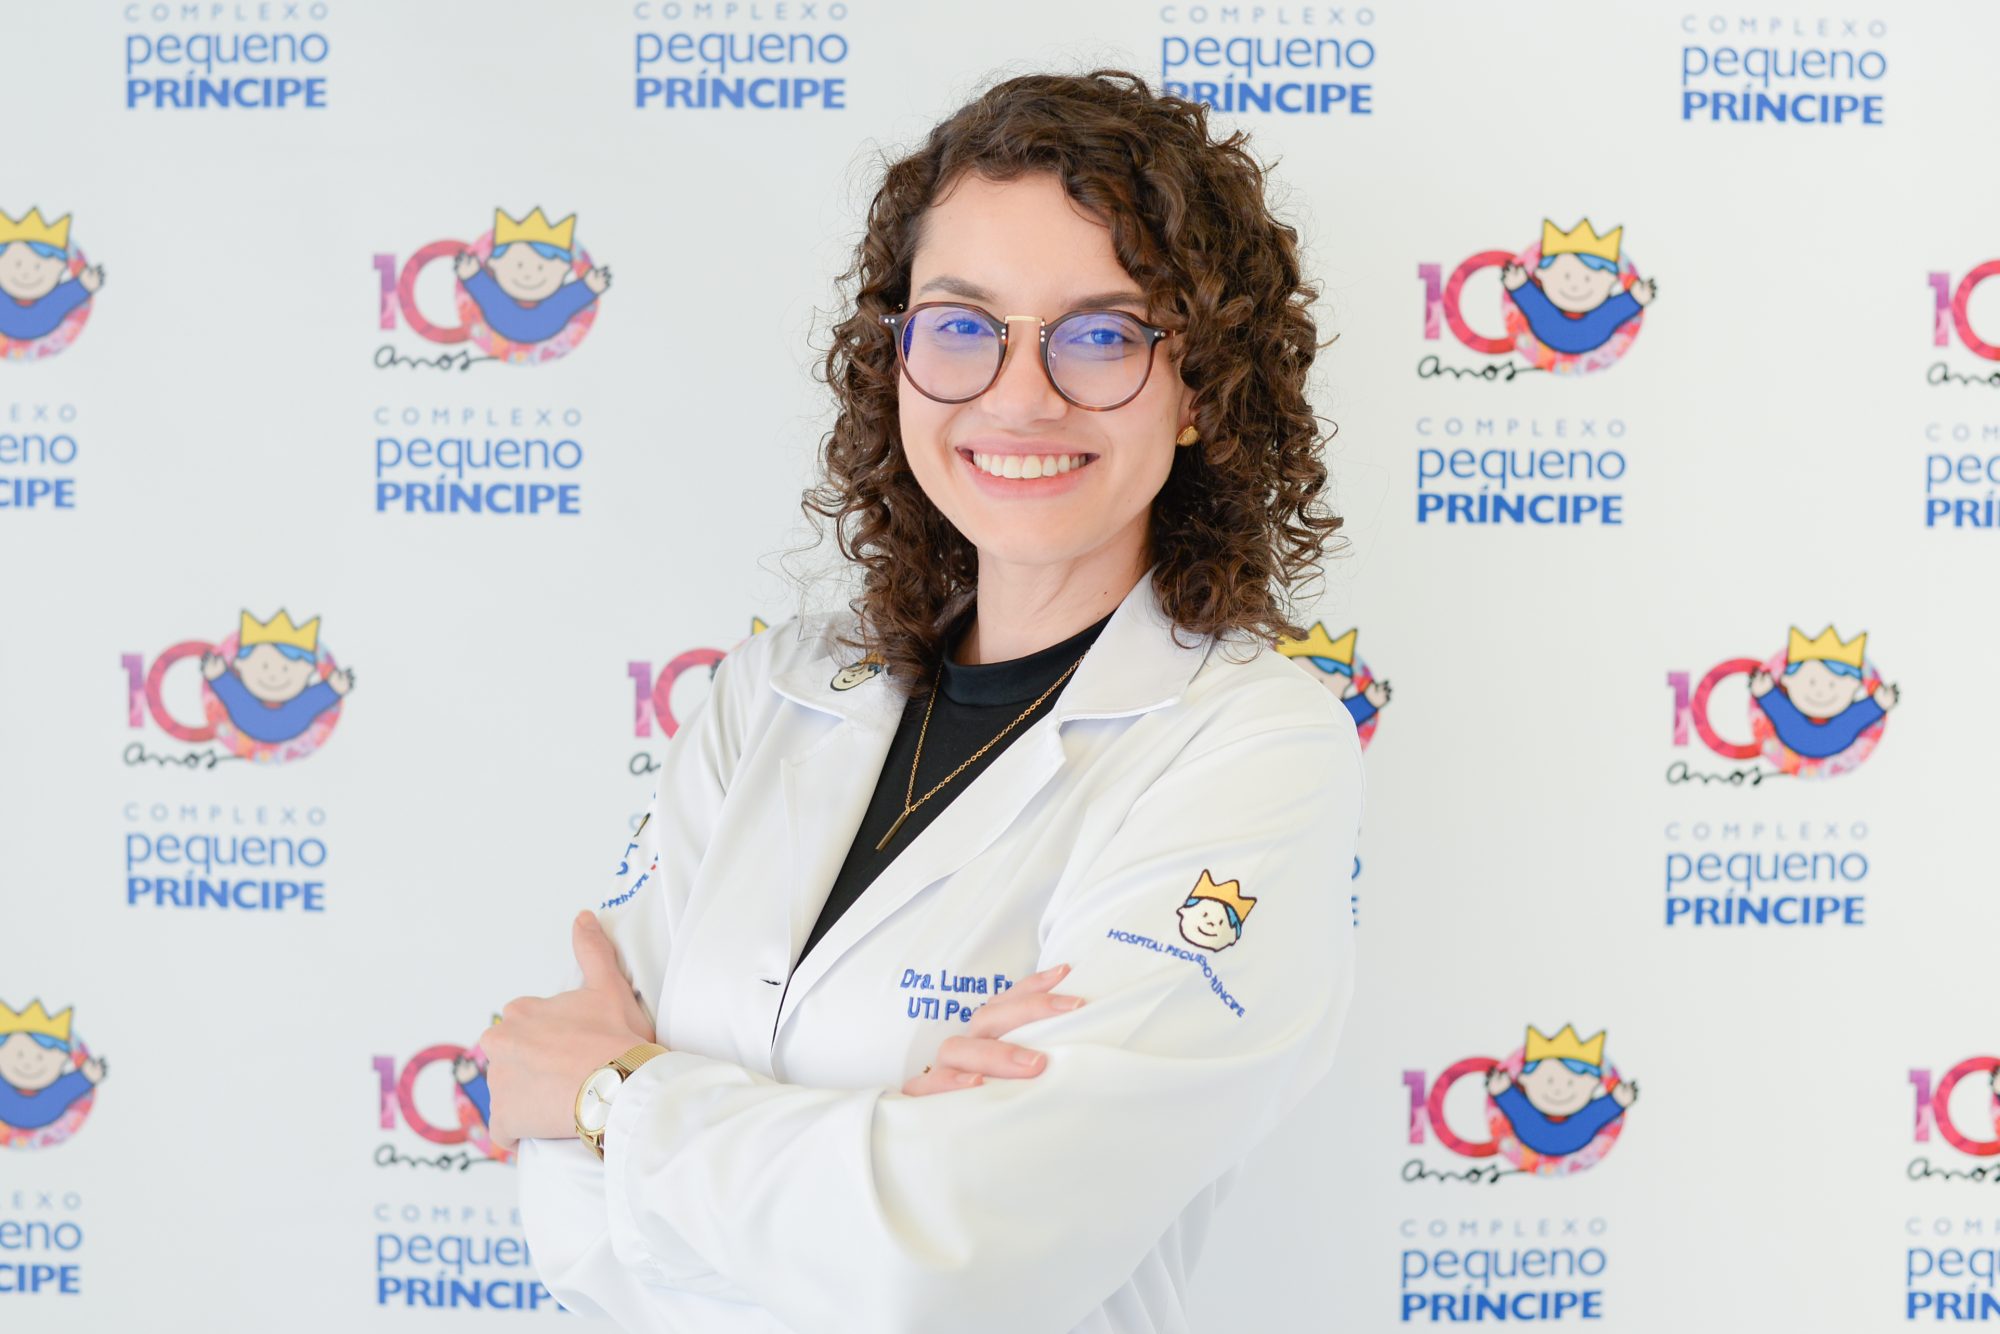 Dra. Luna Pereira Freitas